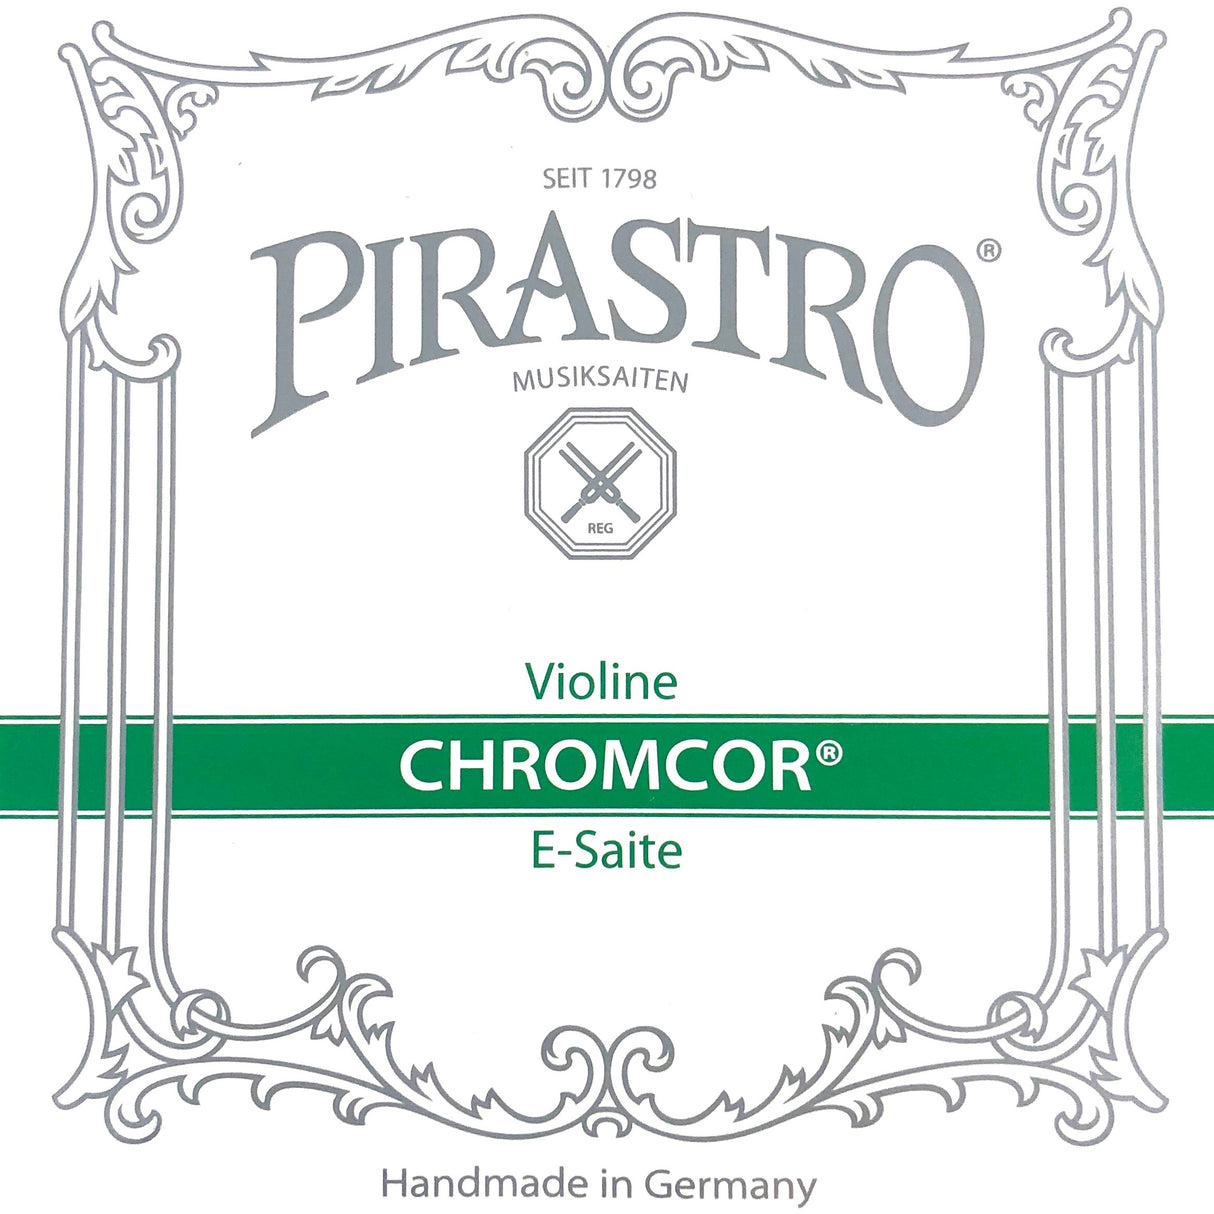 Pirastro Chromcor Violin Einzelsaite E mit Kugel 1/4-1/8 - Musik-Ebert Gmbh